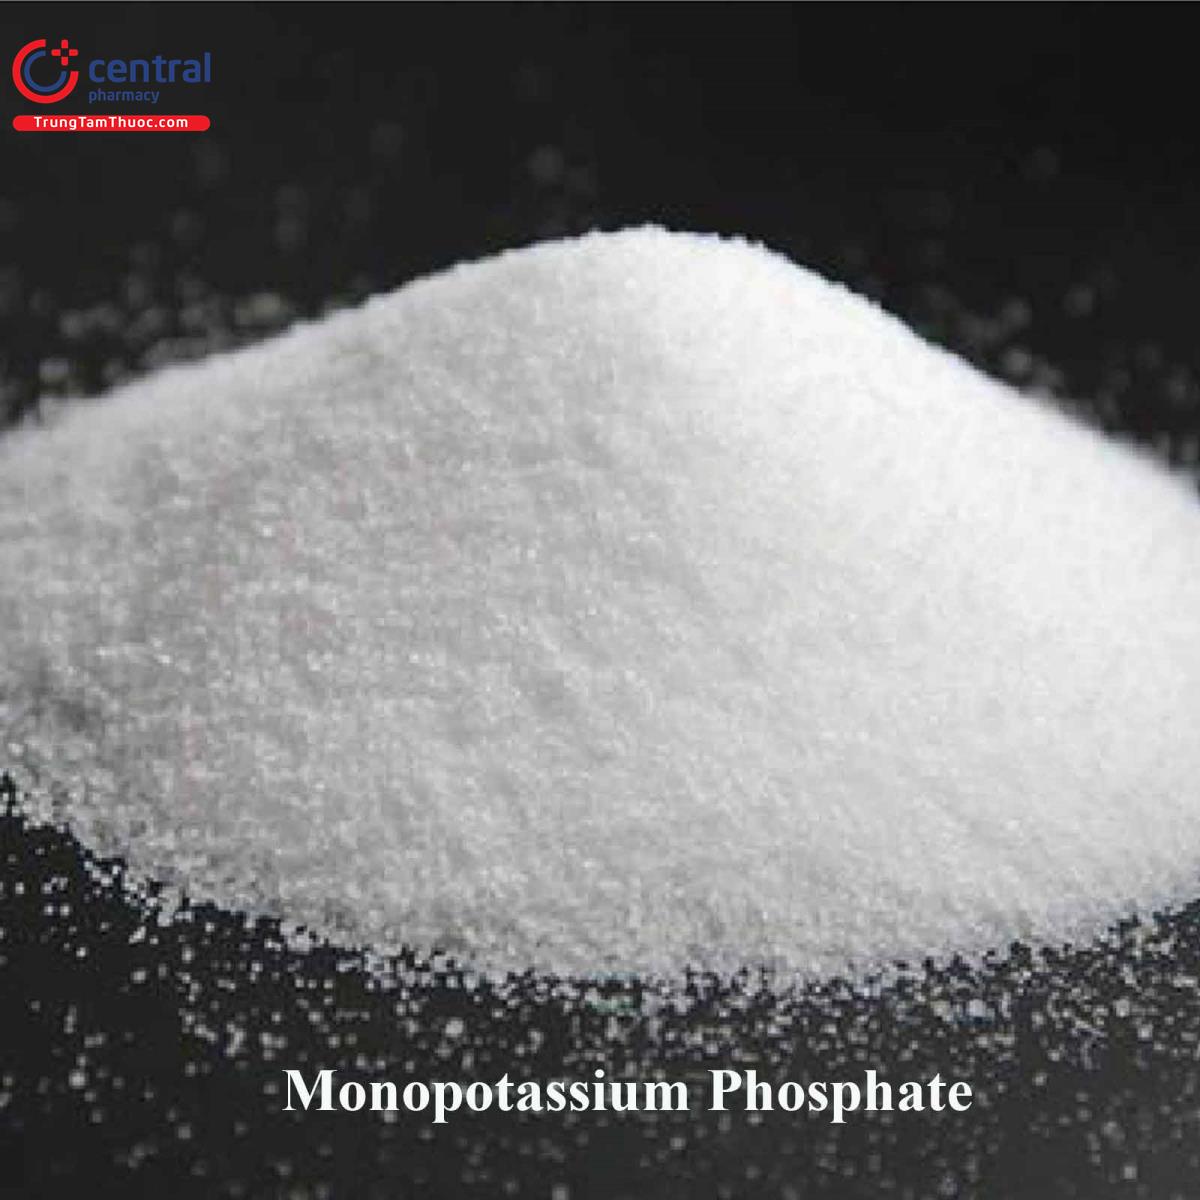 Monopotassium phosphate (Kali biphosphate, MPK)